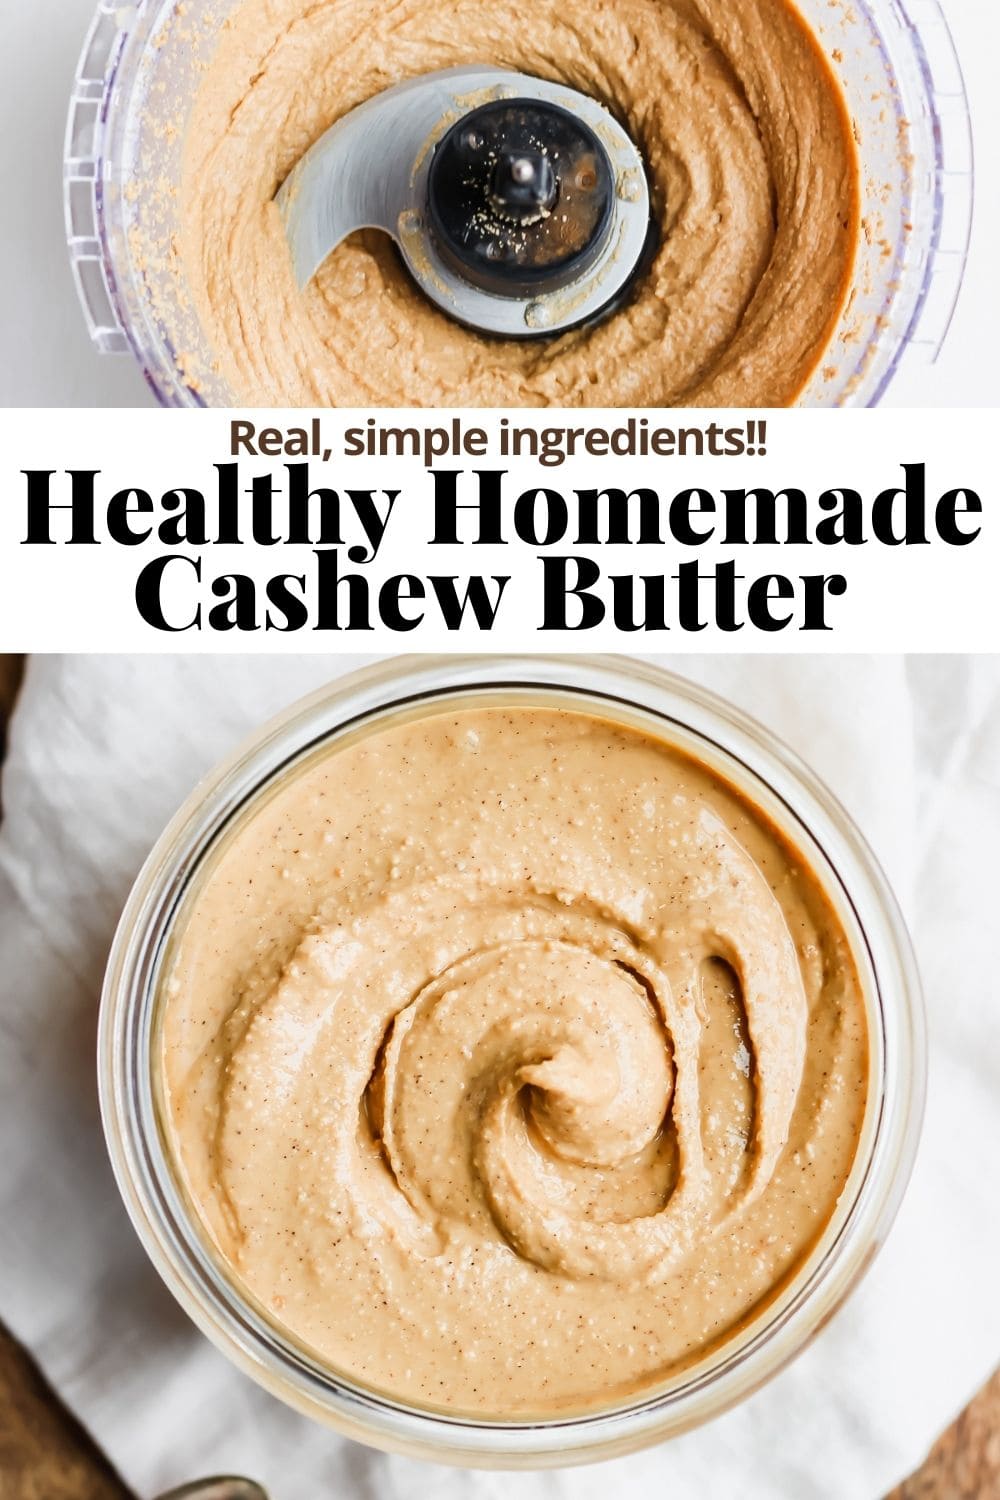 Pinterest image for homemade cashew butter.